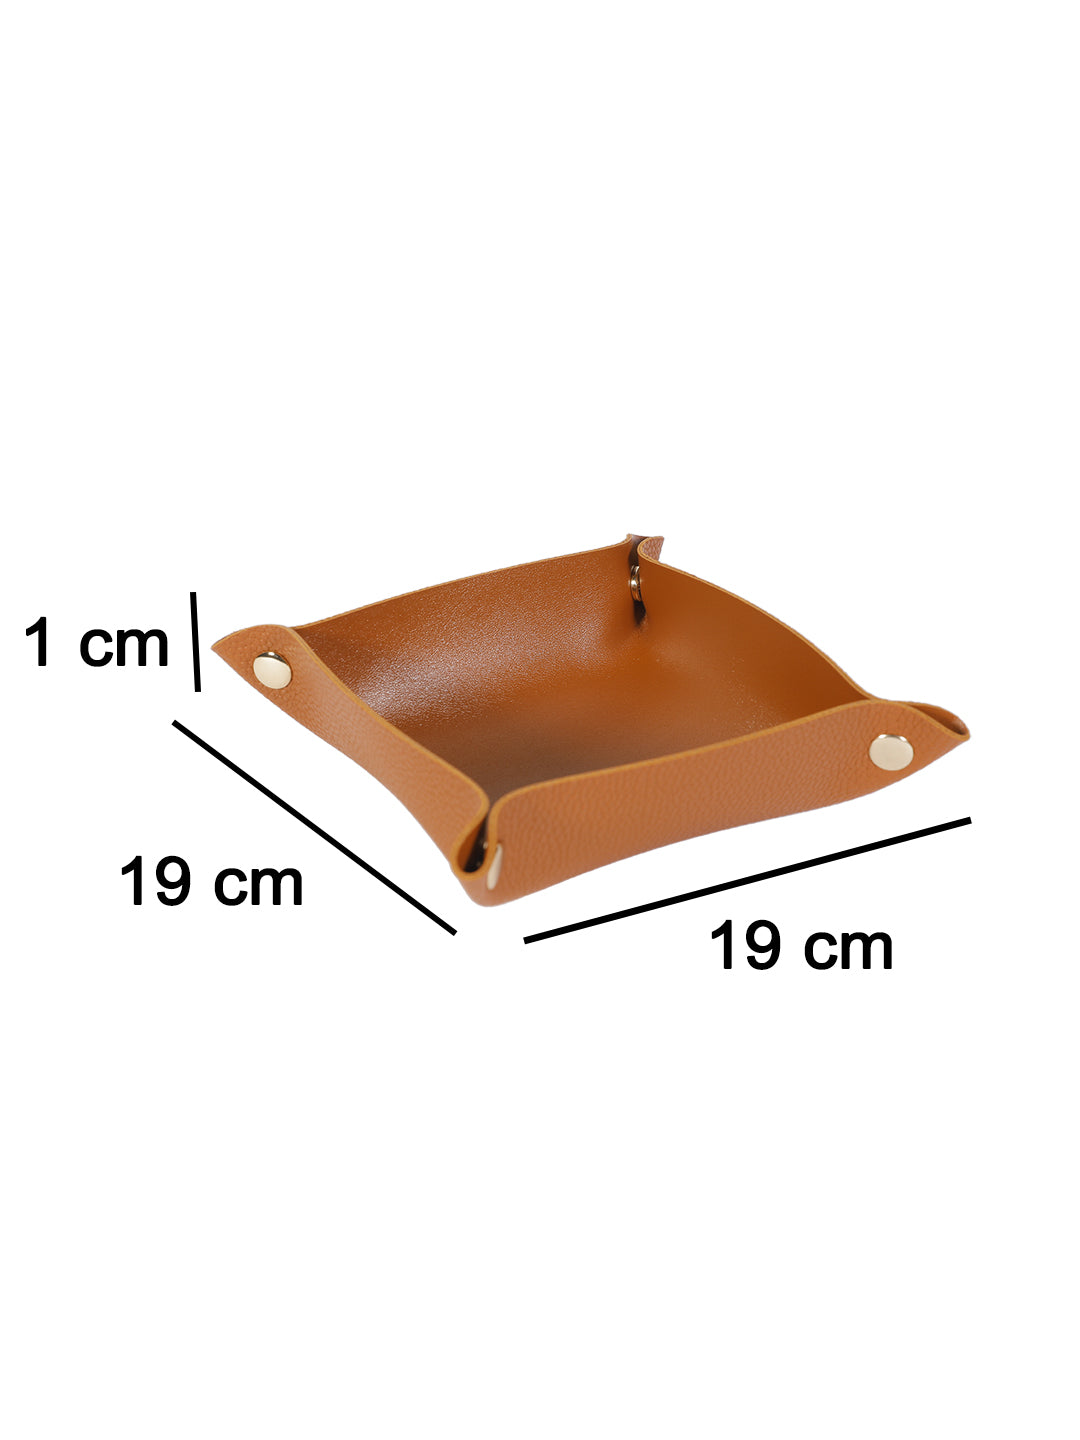 VON CASA Leather Desktop Storage Tray - Brown